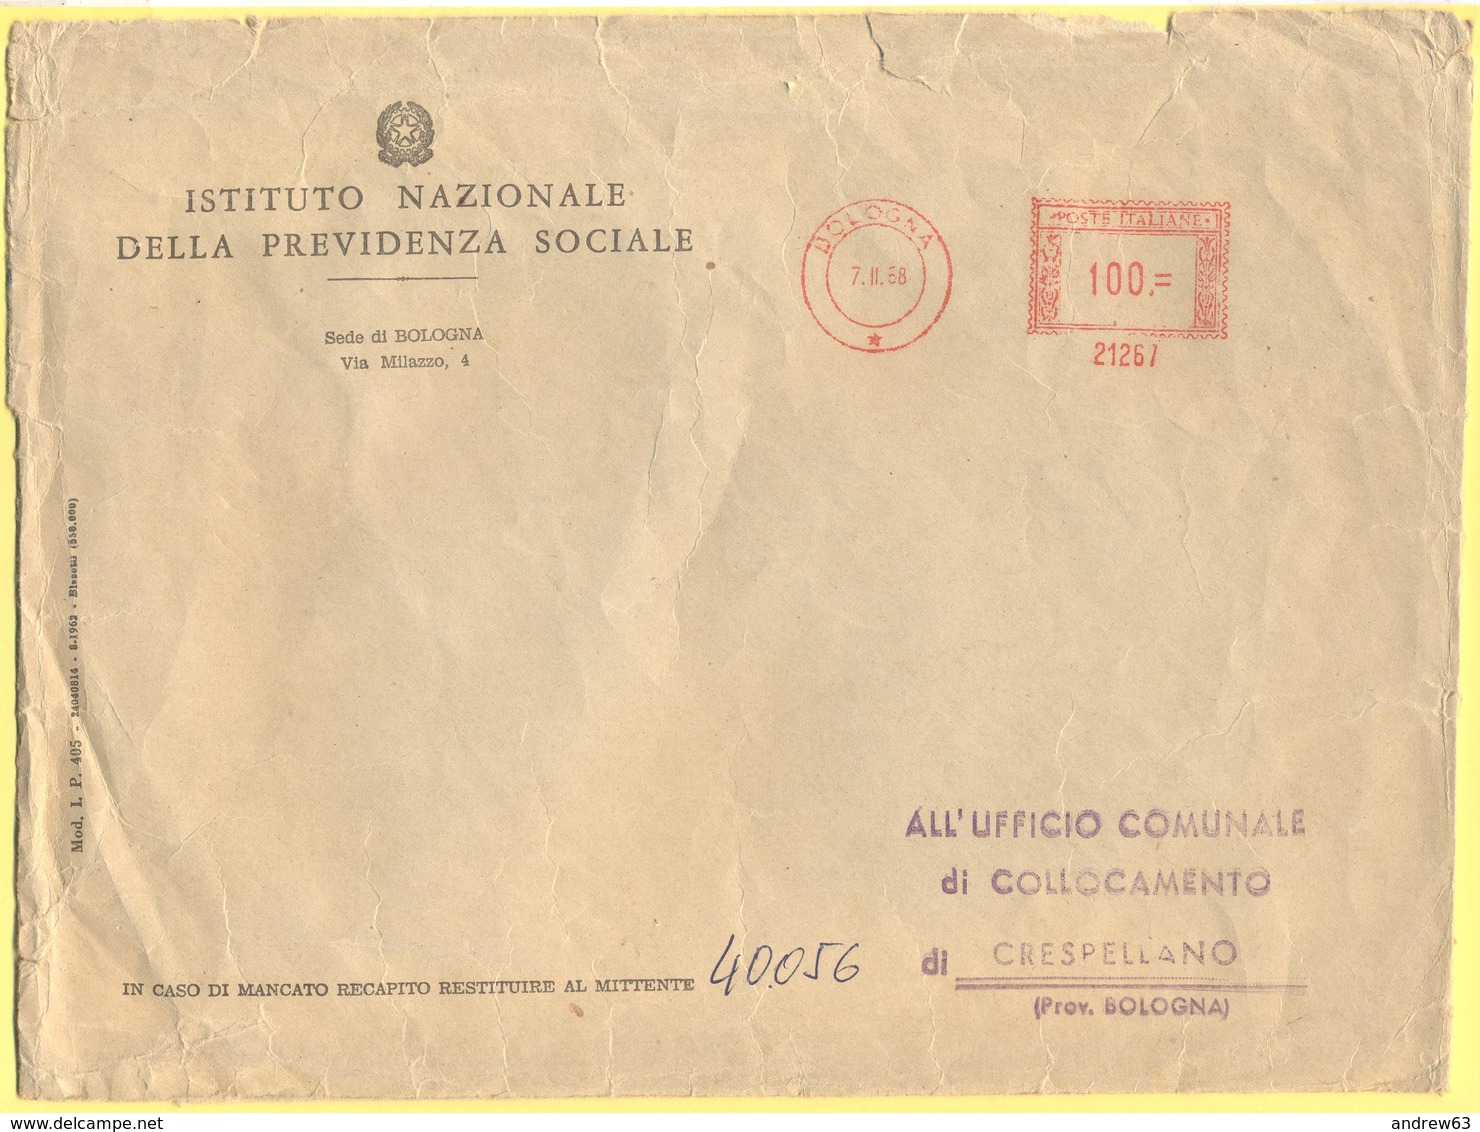 ITALIA - ITALY - ITALIE - 1968 - 100 EMA,Red Cancel - Istituto Nazionale Della Previdenza Sociale, INPS - Viaggiata Da B - Macchine Per Obliterare (EMA)